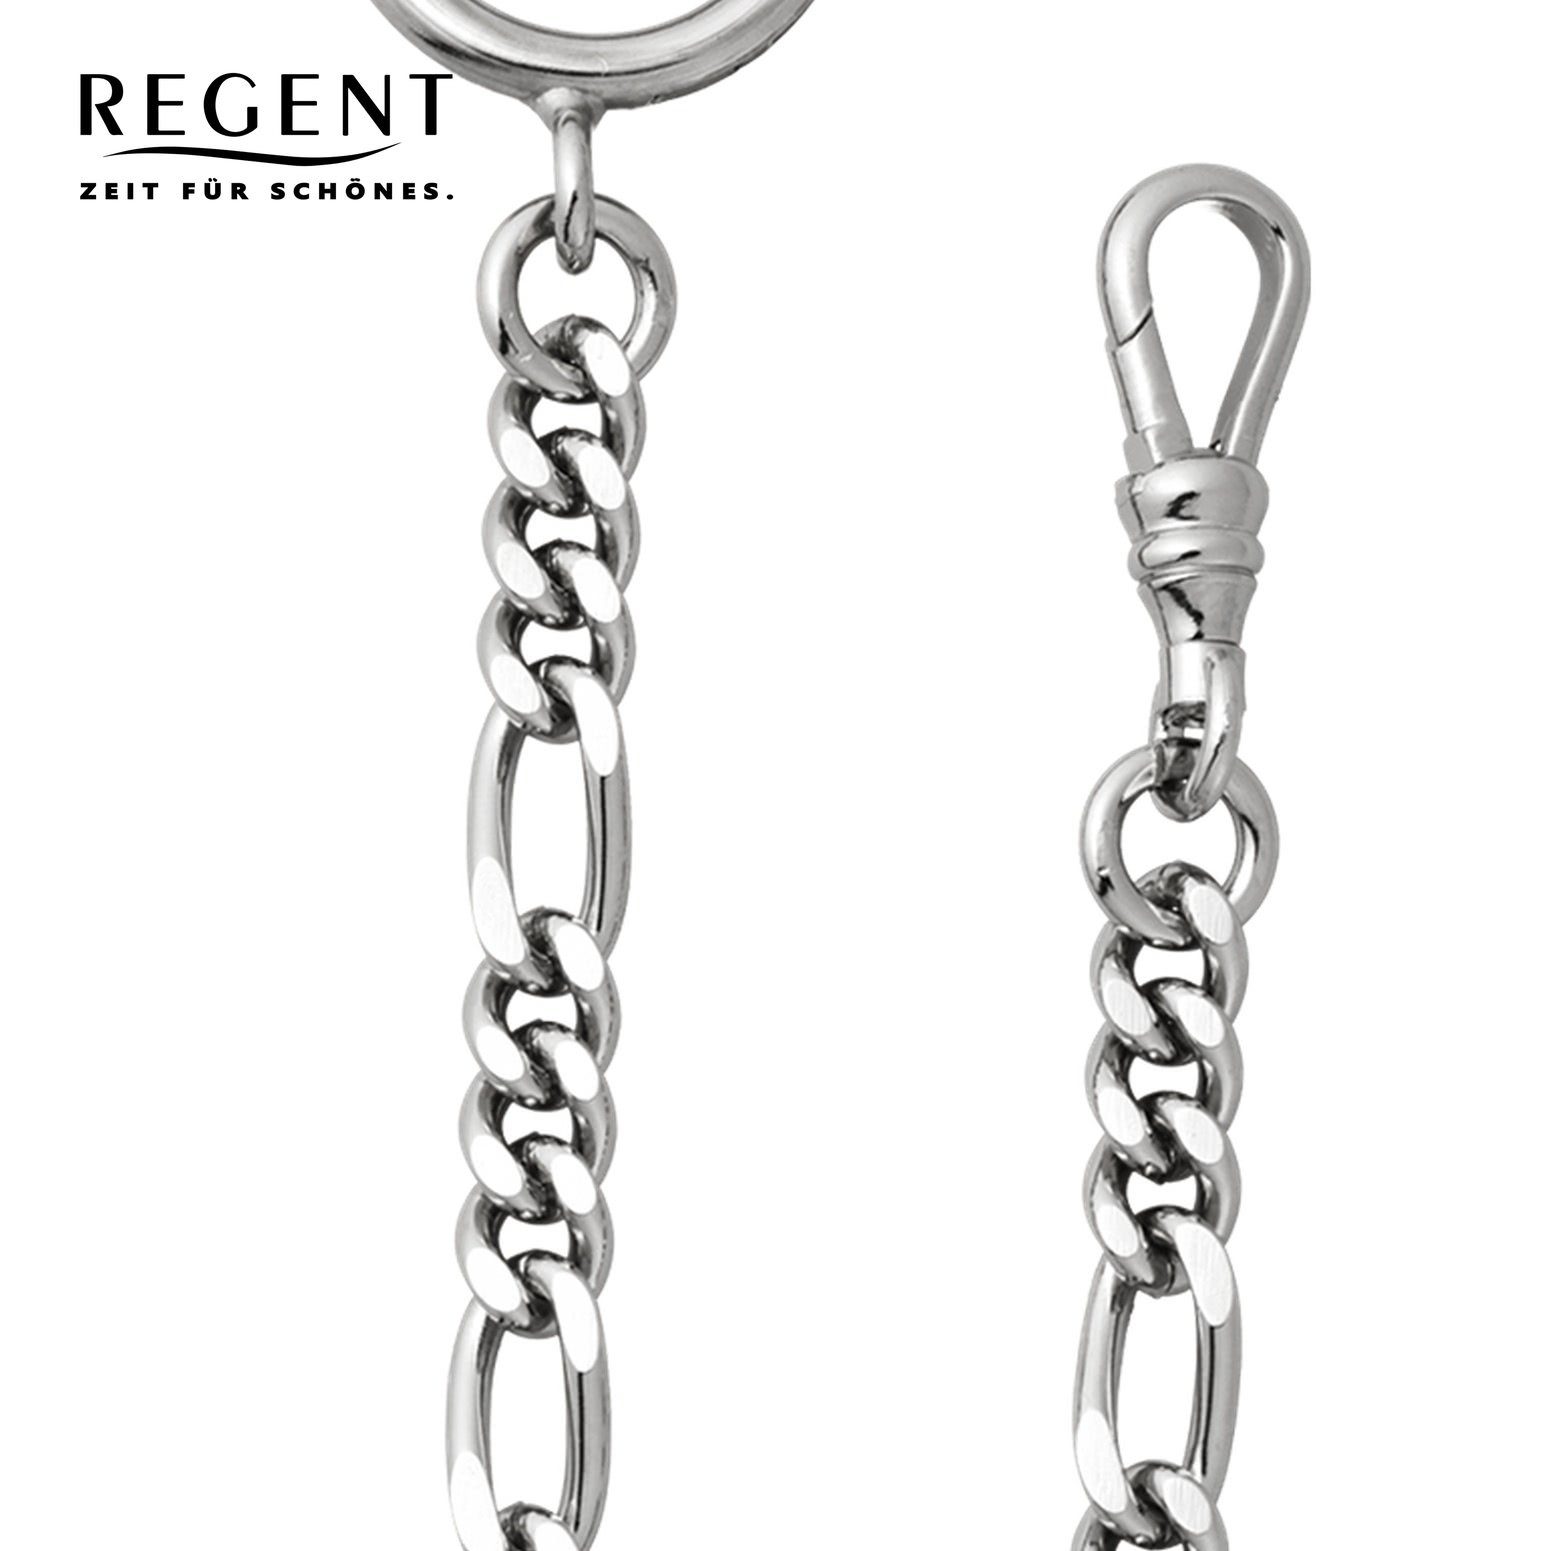 Elegant Kettenuhr 5mm P-49 Regent Taschenuhrenkette, Herren Taschenuhren-Kette Regent Figaro,